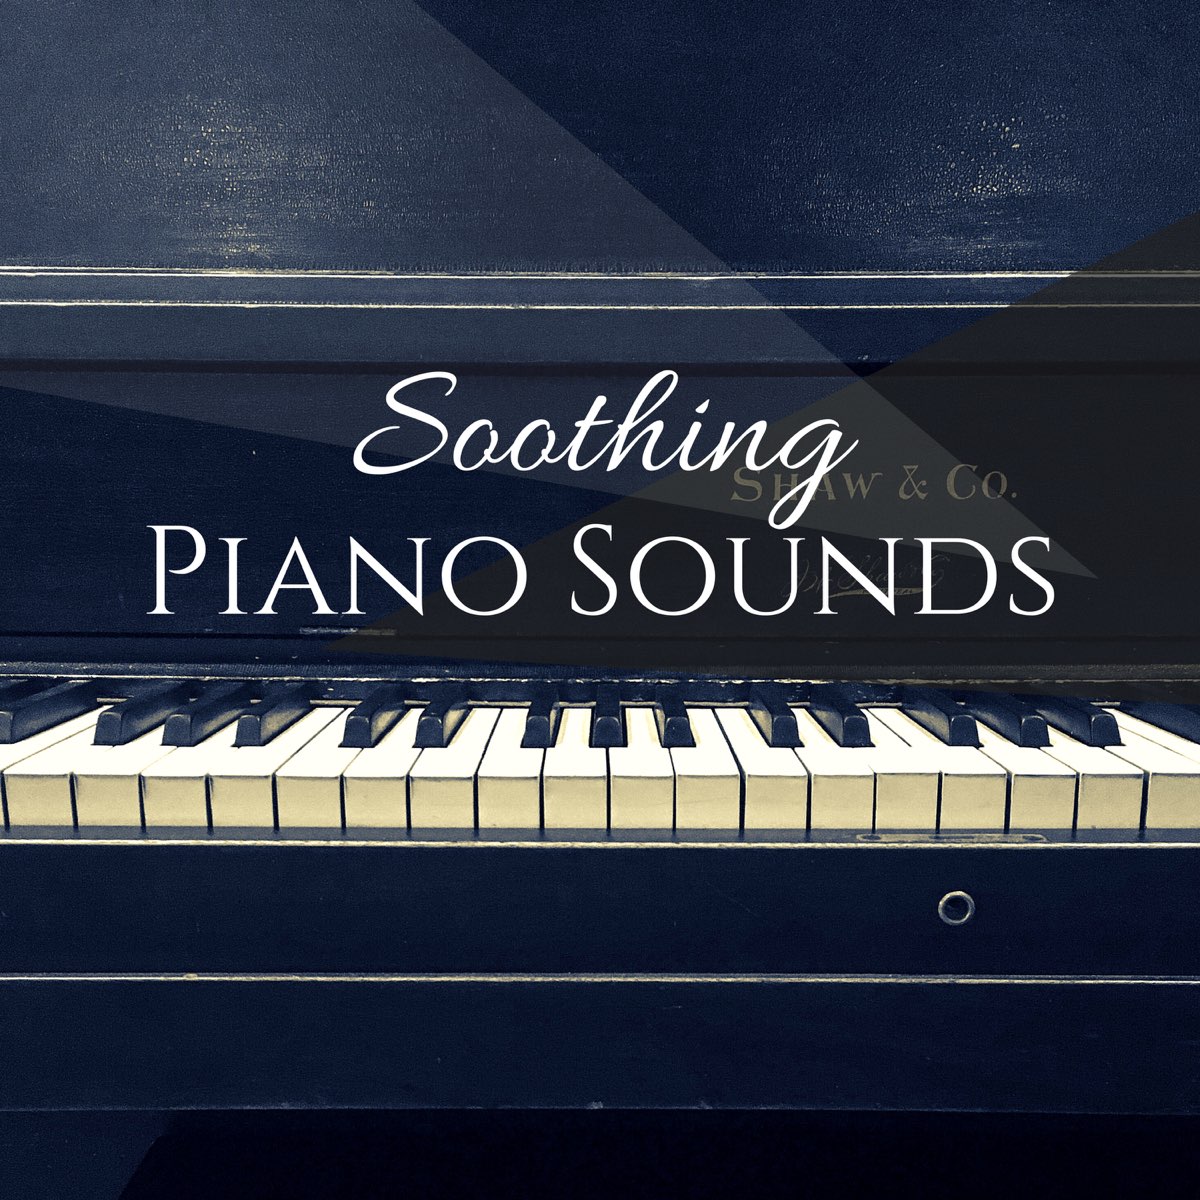 Piano sounds